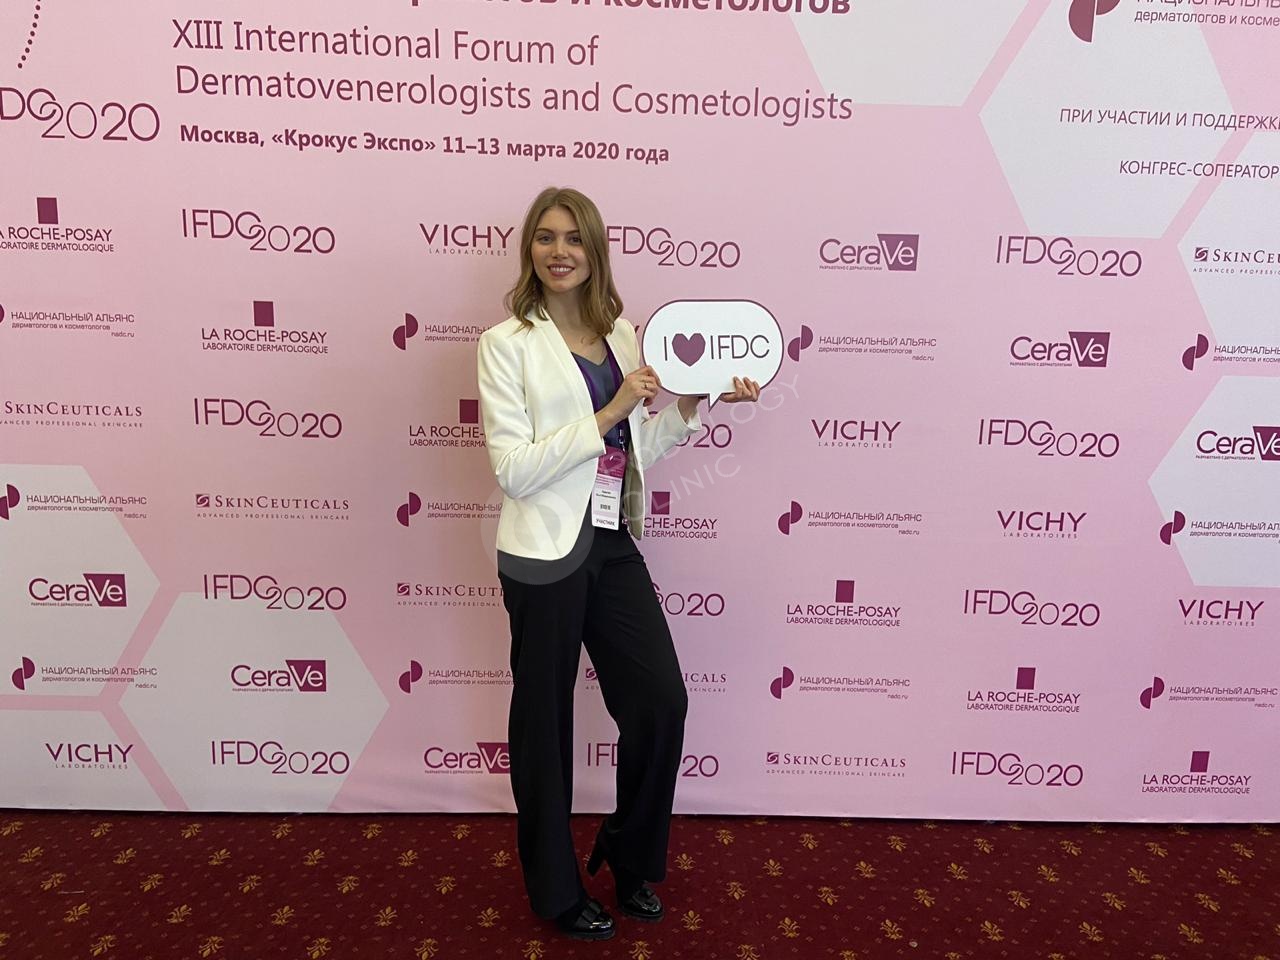 XIII Международный форум дерматовенерологов и косметологов IFDC2020, фото 2